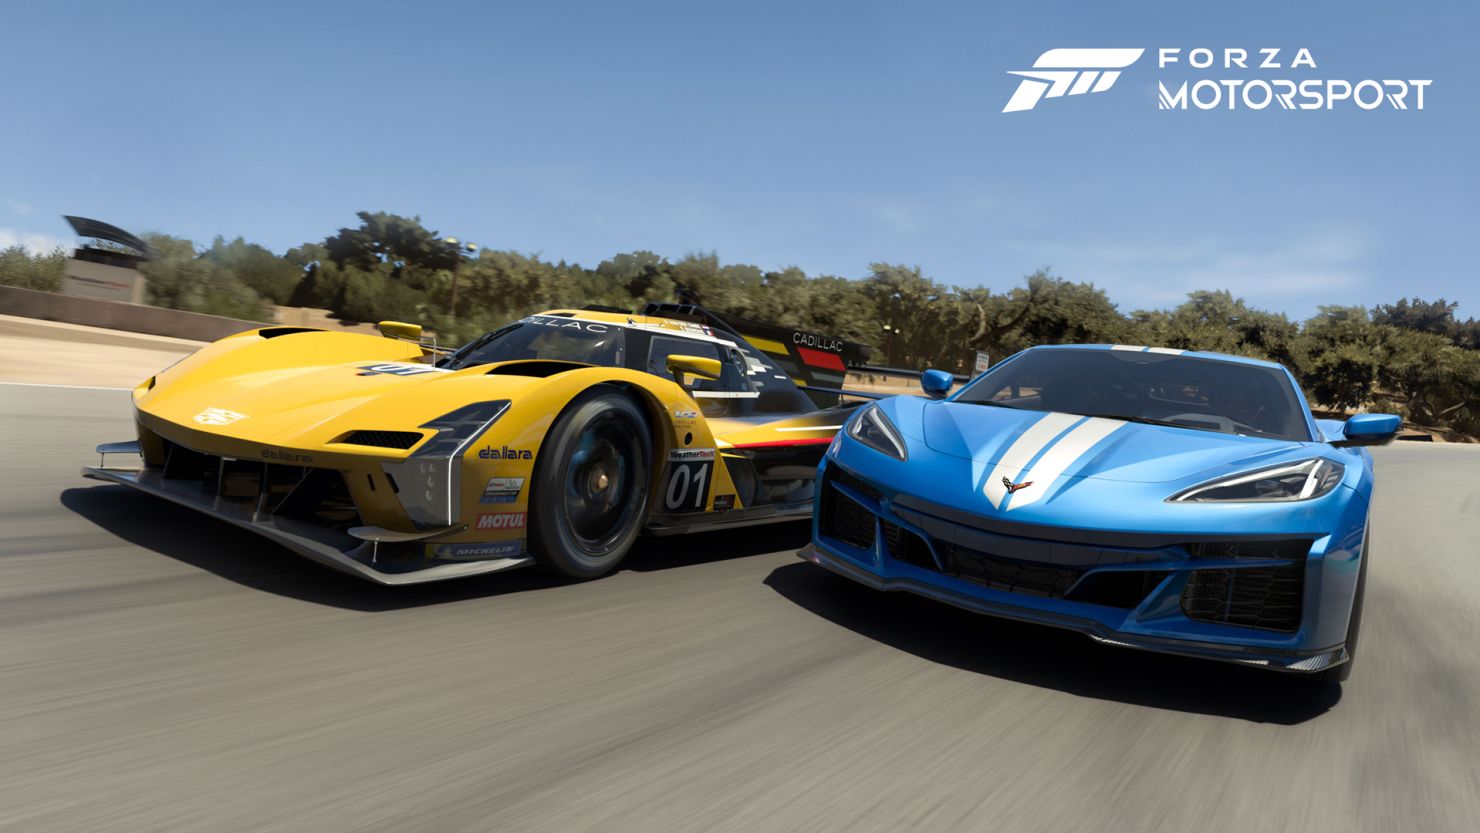 Não consigo abrir o Forza Motorsport 7. - Microsoft Community